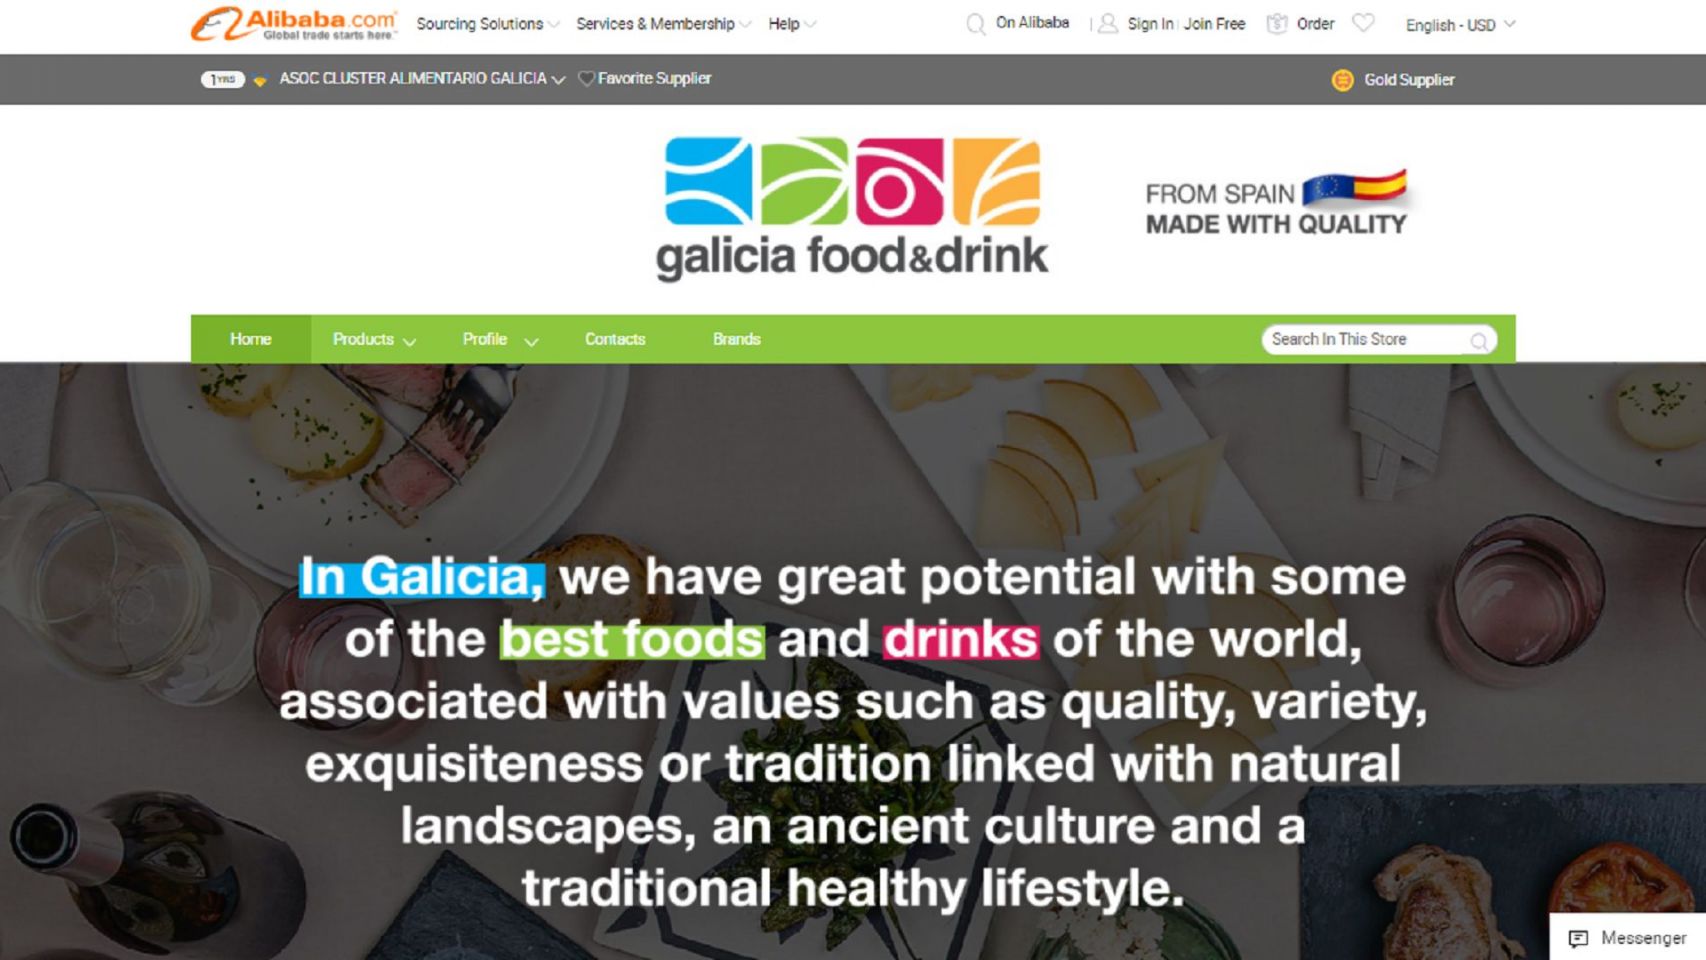 Portal de Galicia Food&Drink en Alibaba.